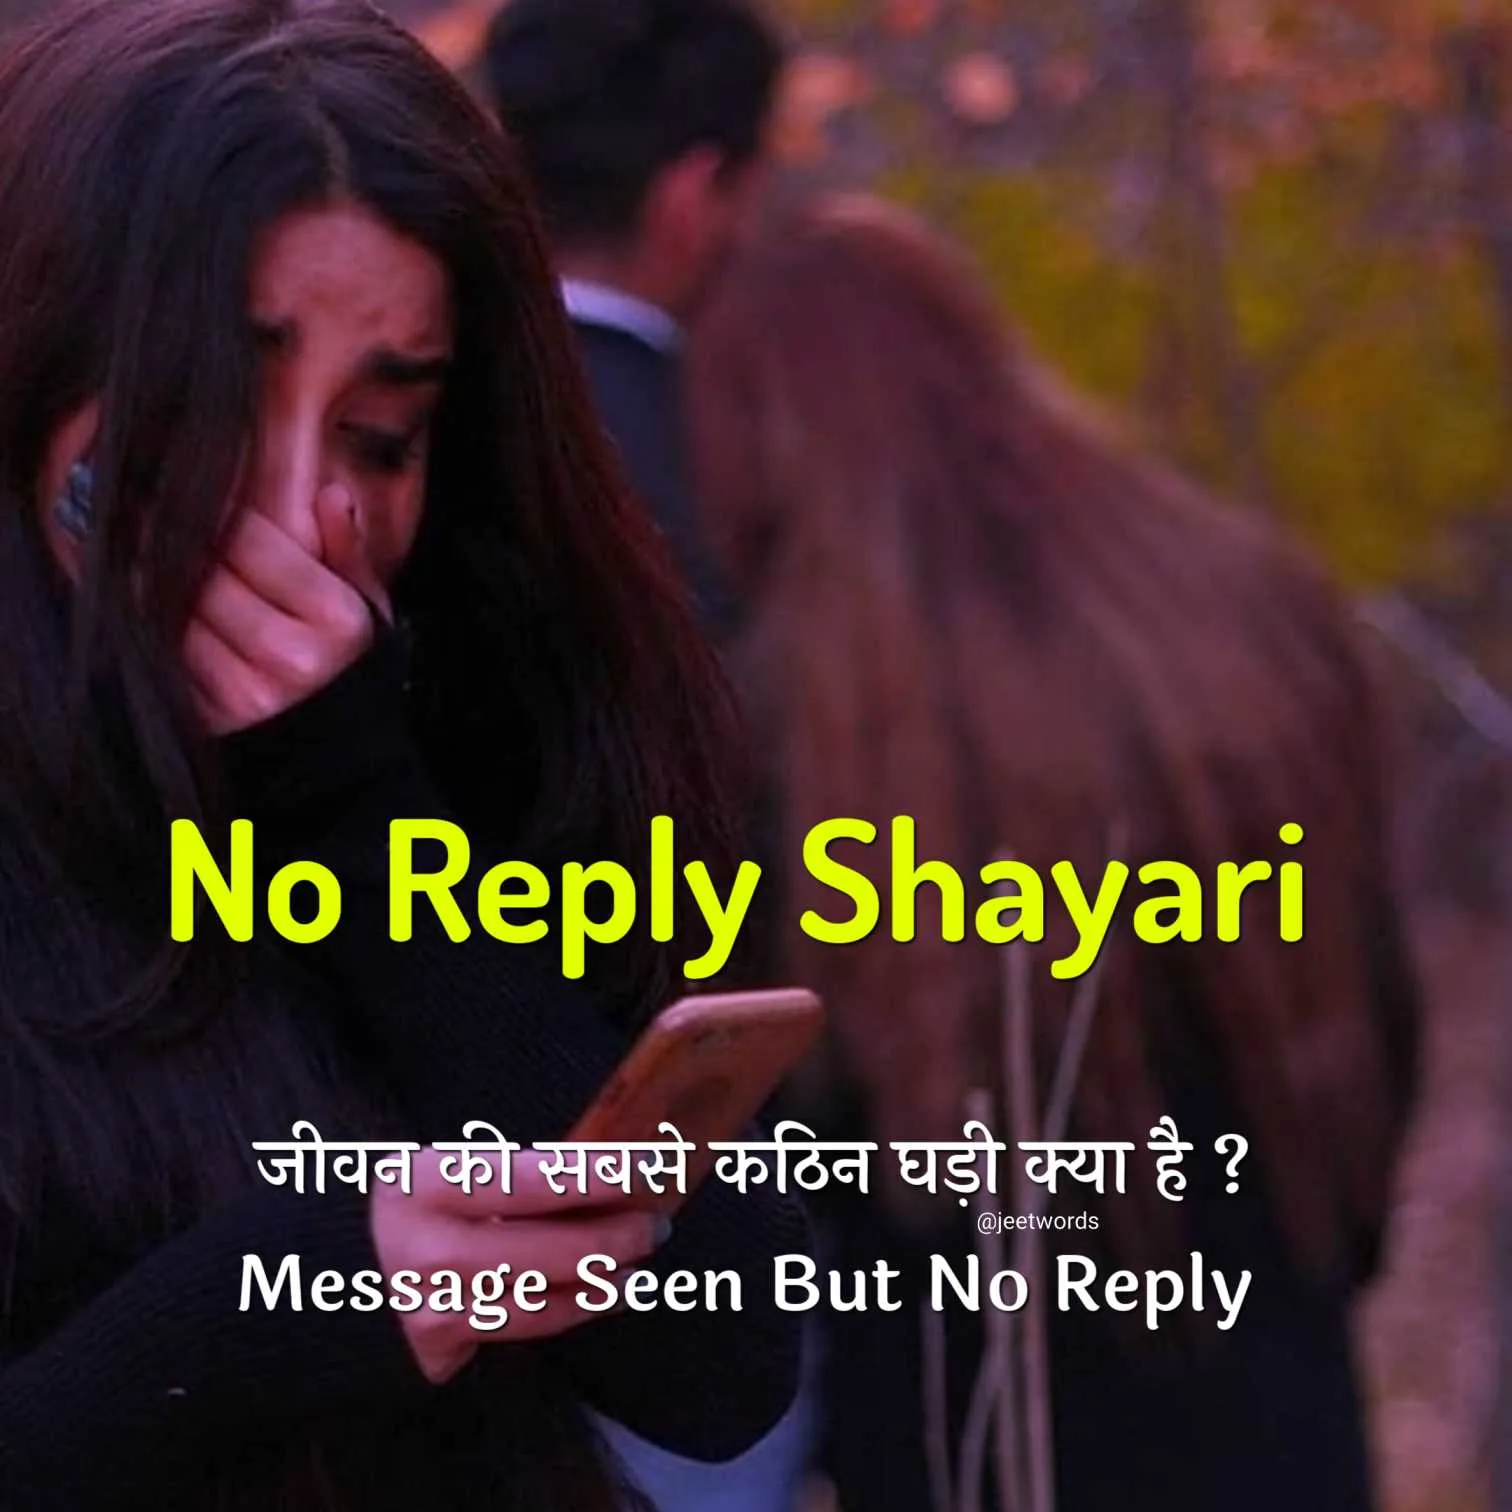 No Reply Shayari images